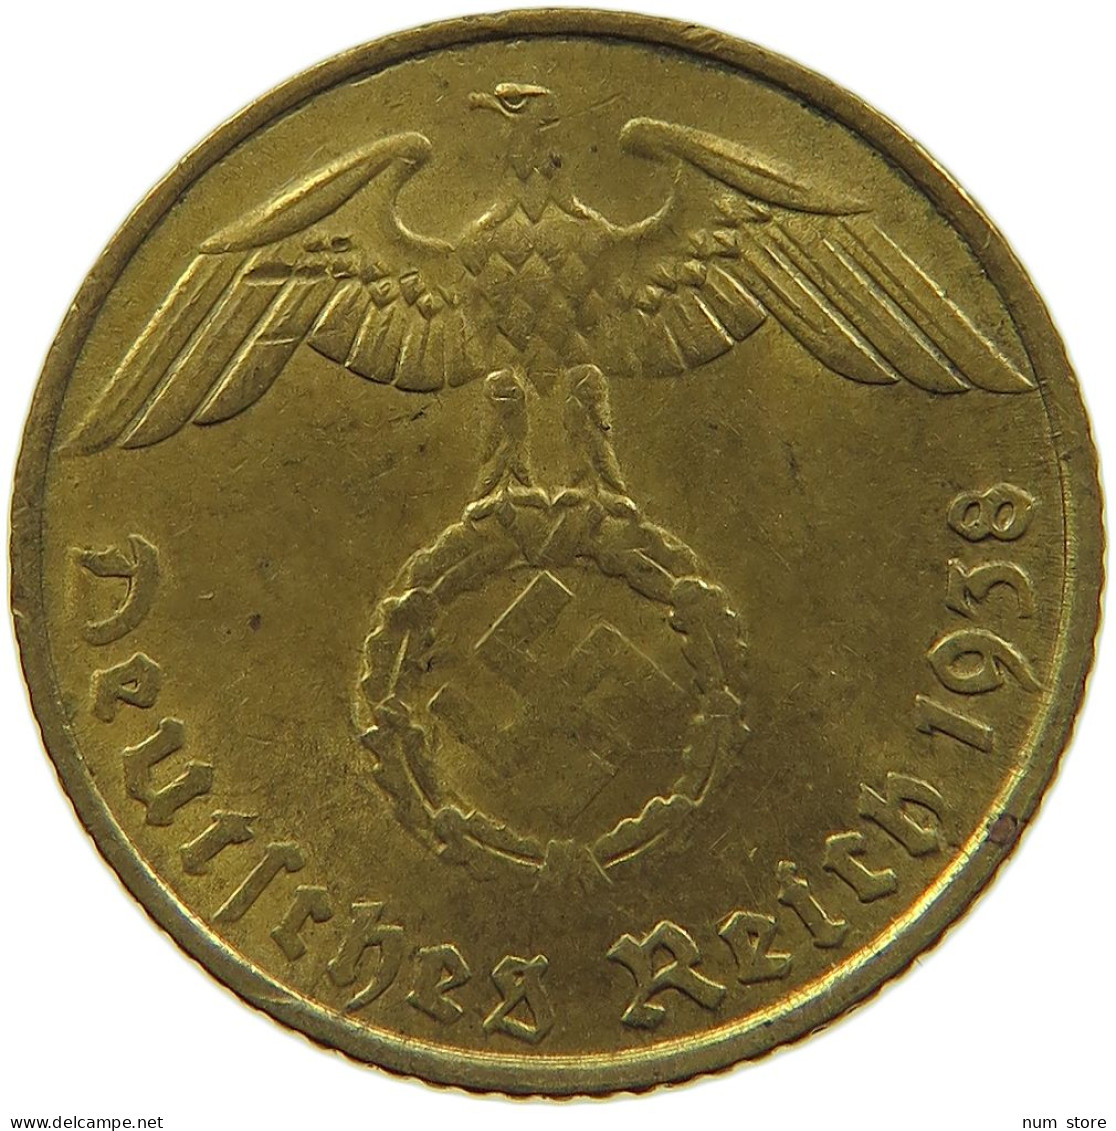 GERMANY 5 REICHSPFENNIG 1938 E #s091 0597 - 5 Reichspfennig